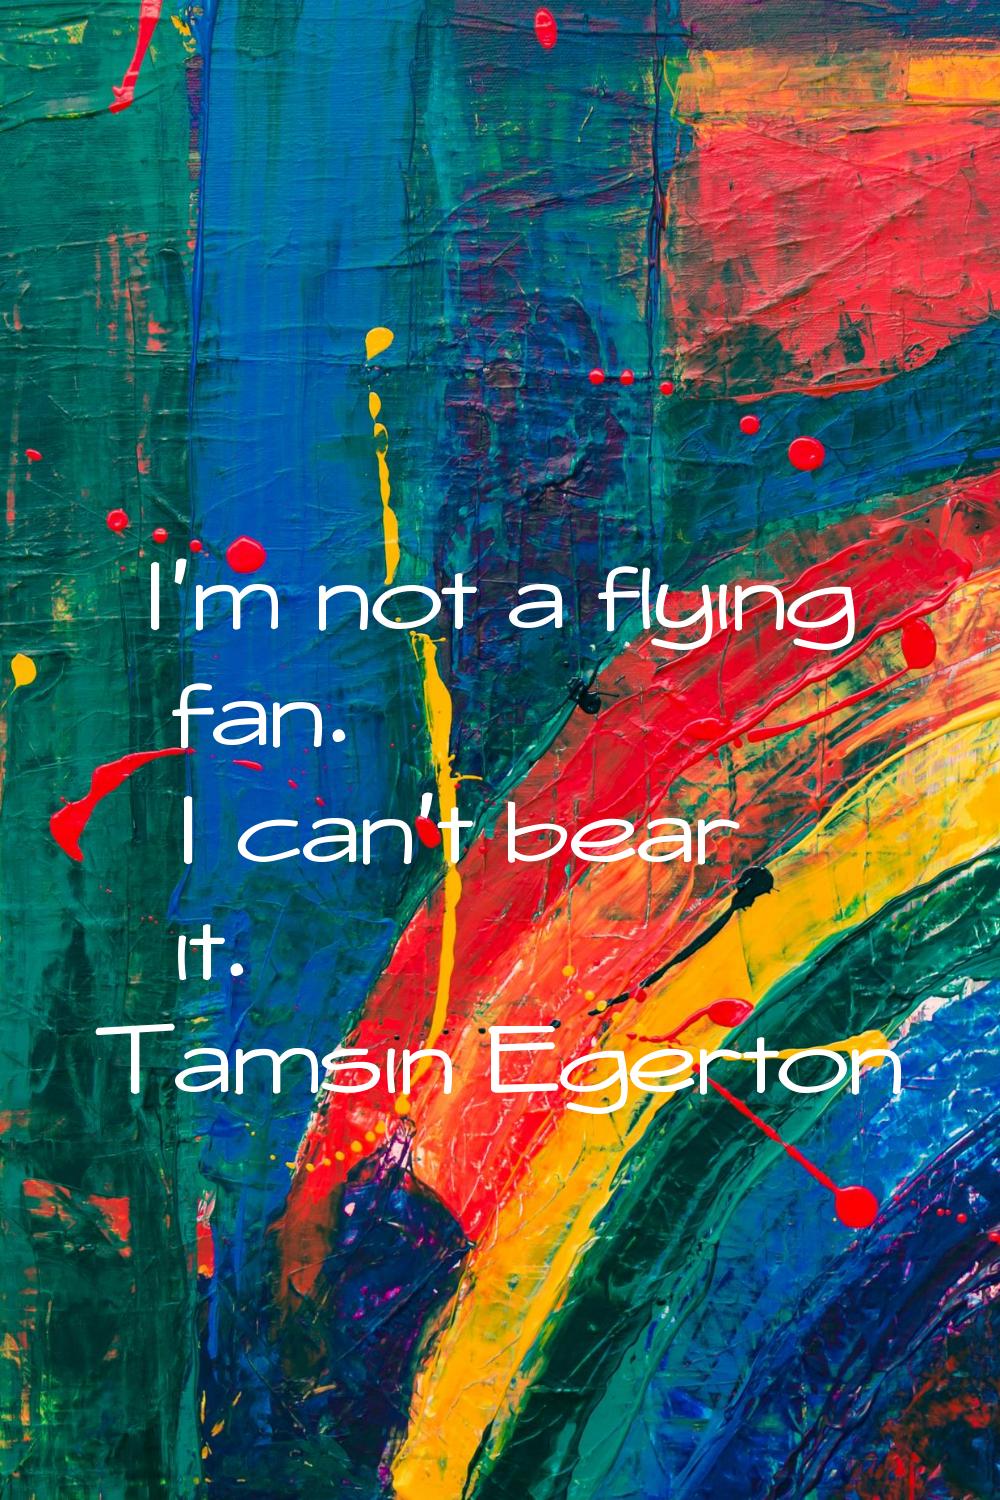 I'm not a flying fan. I can't bear it.